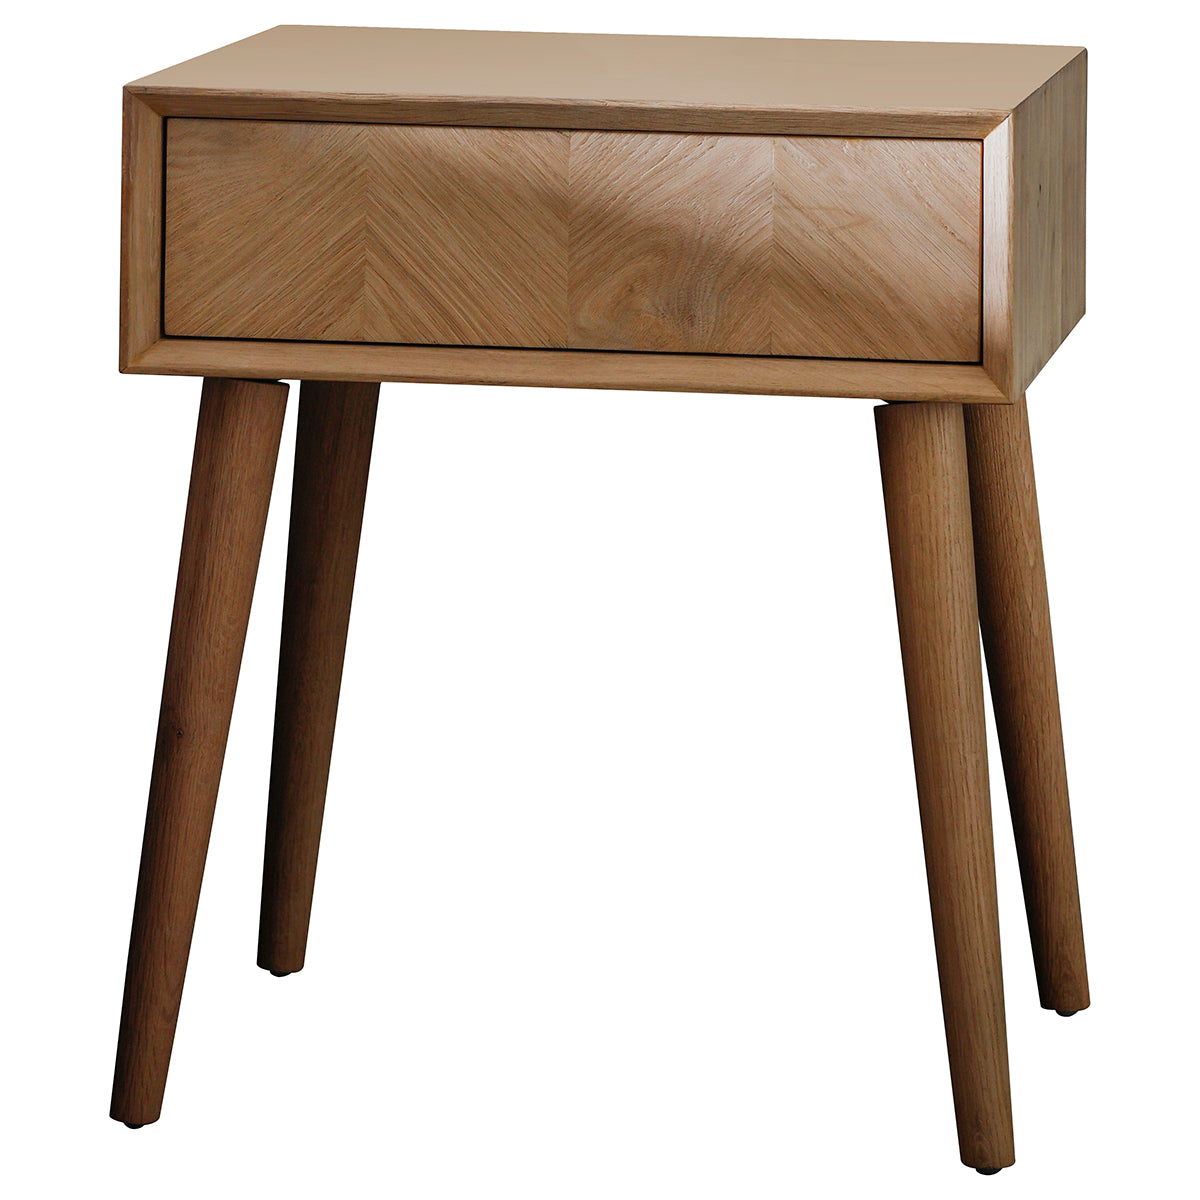 Jakob 1 drawer bedside table in light oak | MalletandPlane.com